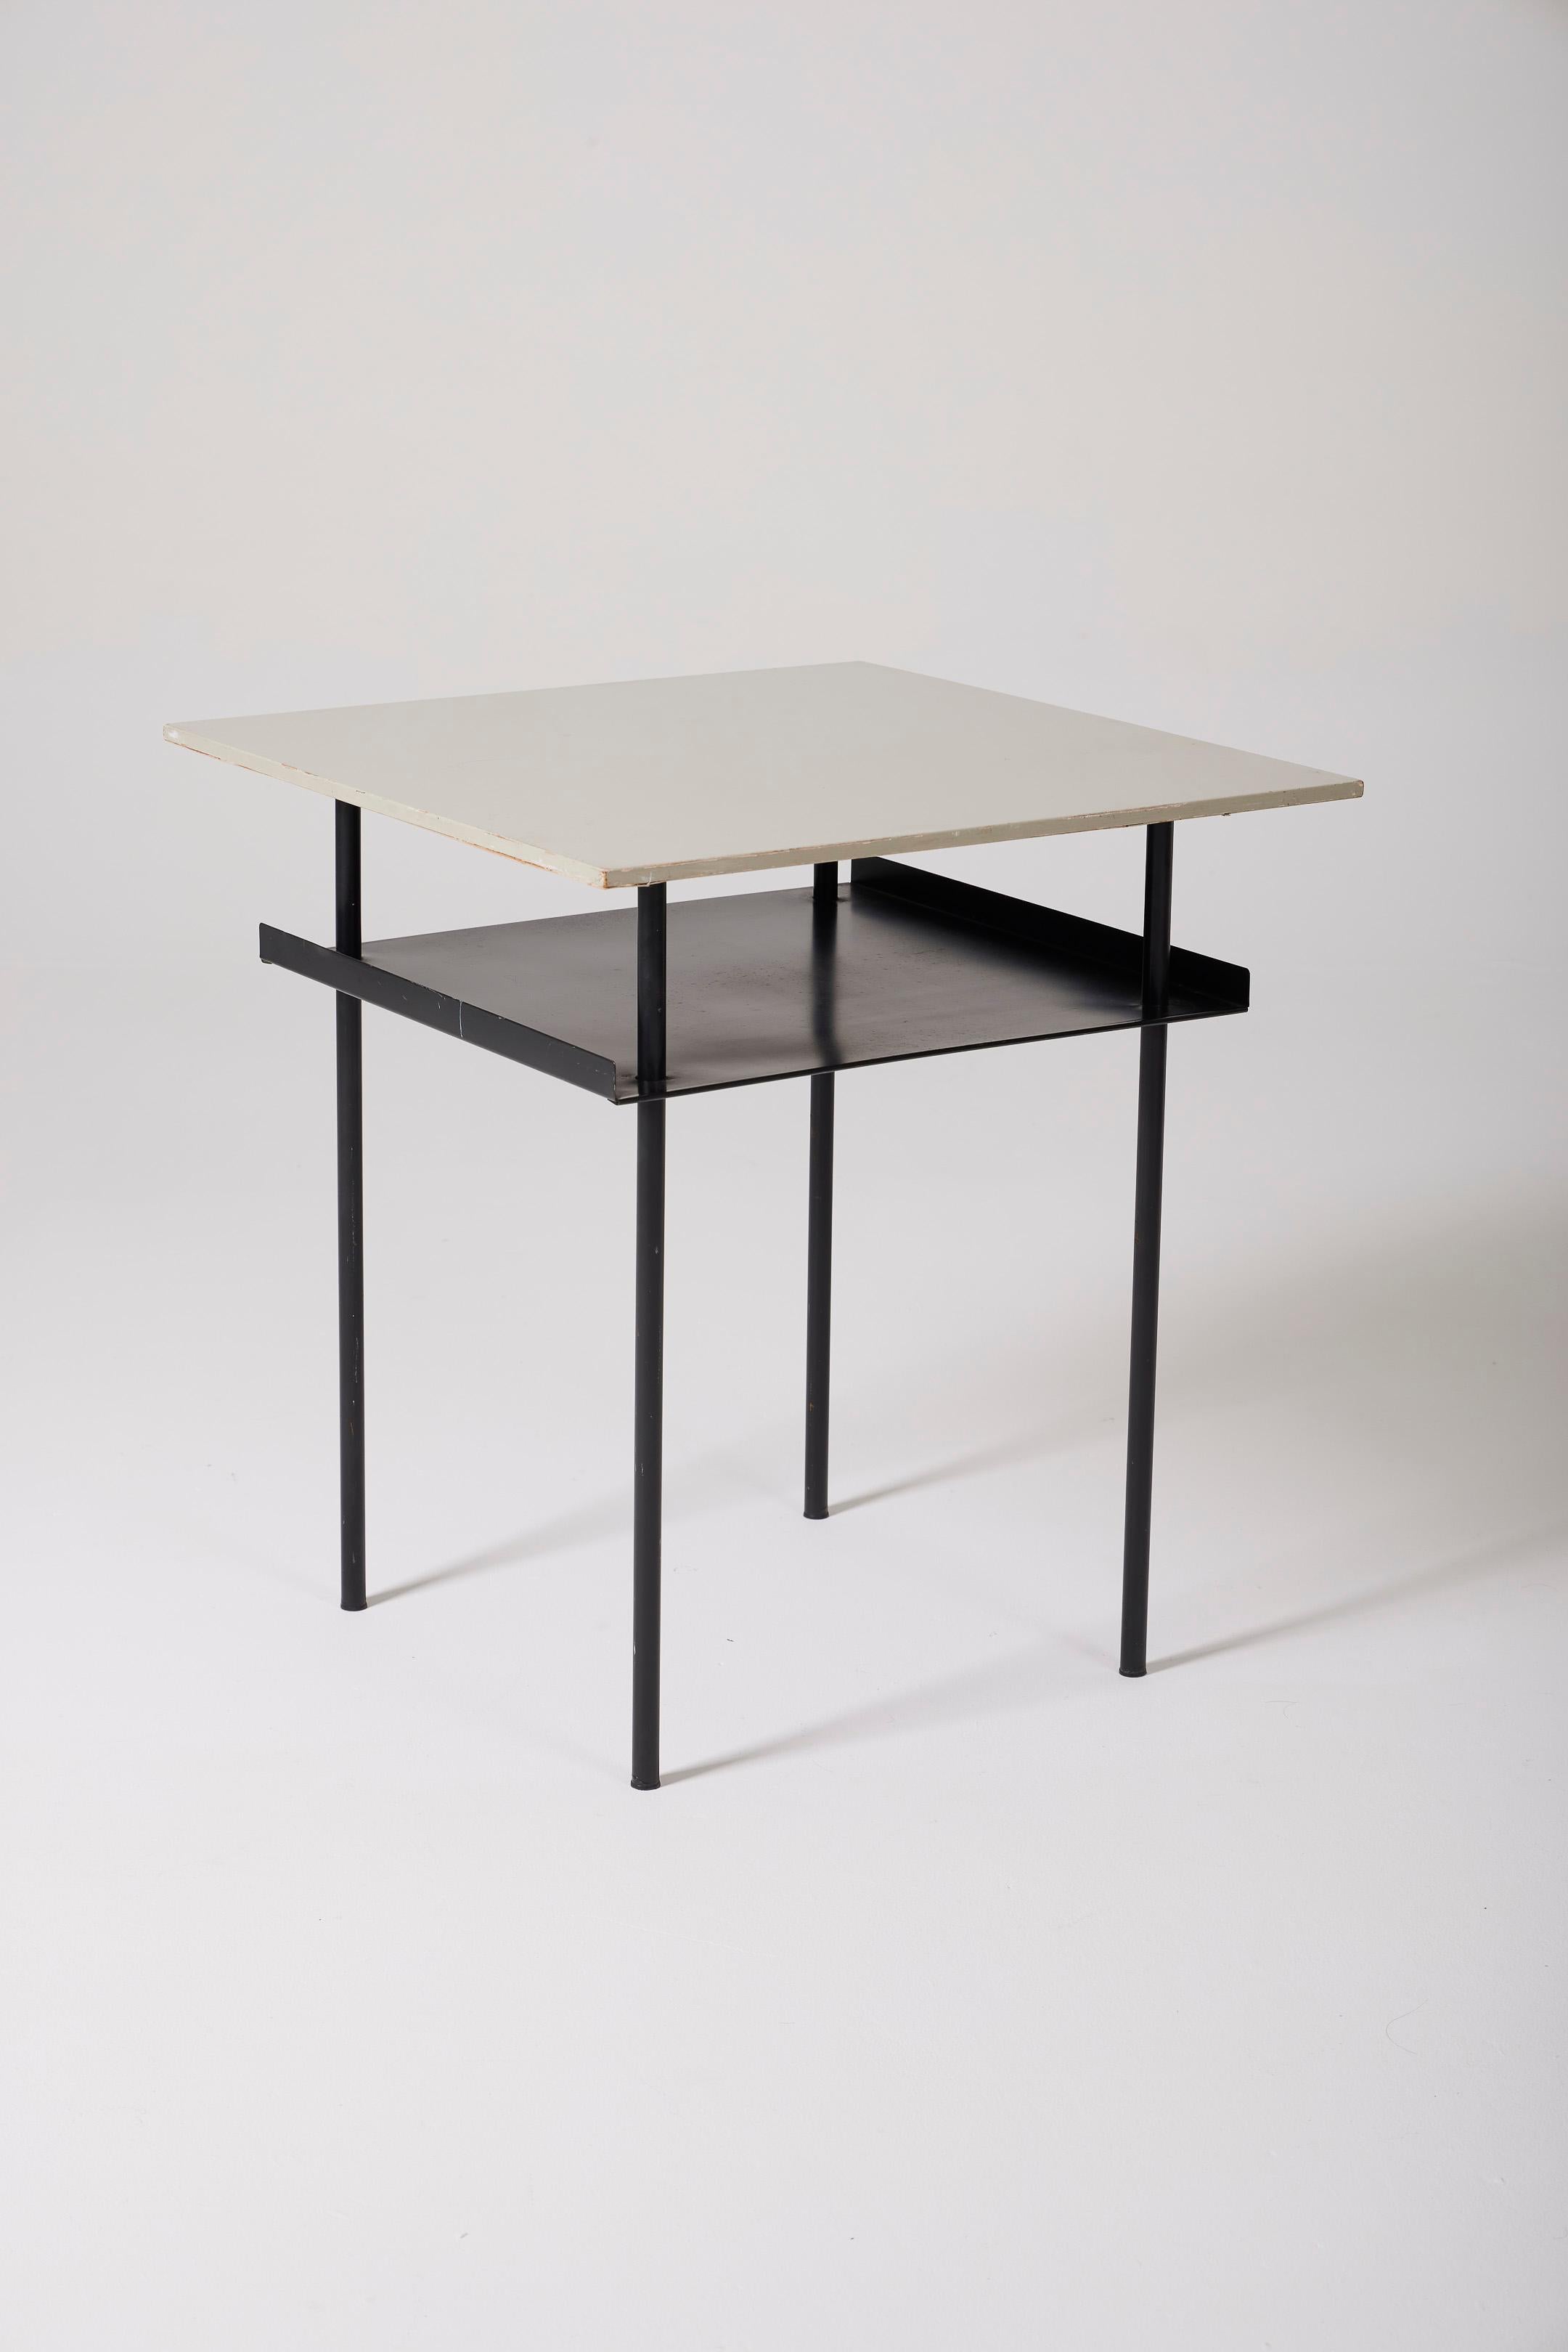  Beistelltisch des niederländischen Designers Wim Rietveld (1924-1985) aus den 1950er Jahren. Der Tisch hat eine weiß lackierte Holzplatte und ein schwarz lackiertes Metallrohrgestell. Unter der Platte befindet sich eine zusätzliche Ablagefläche,